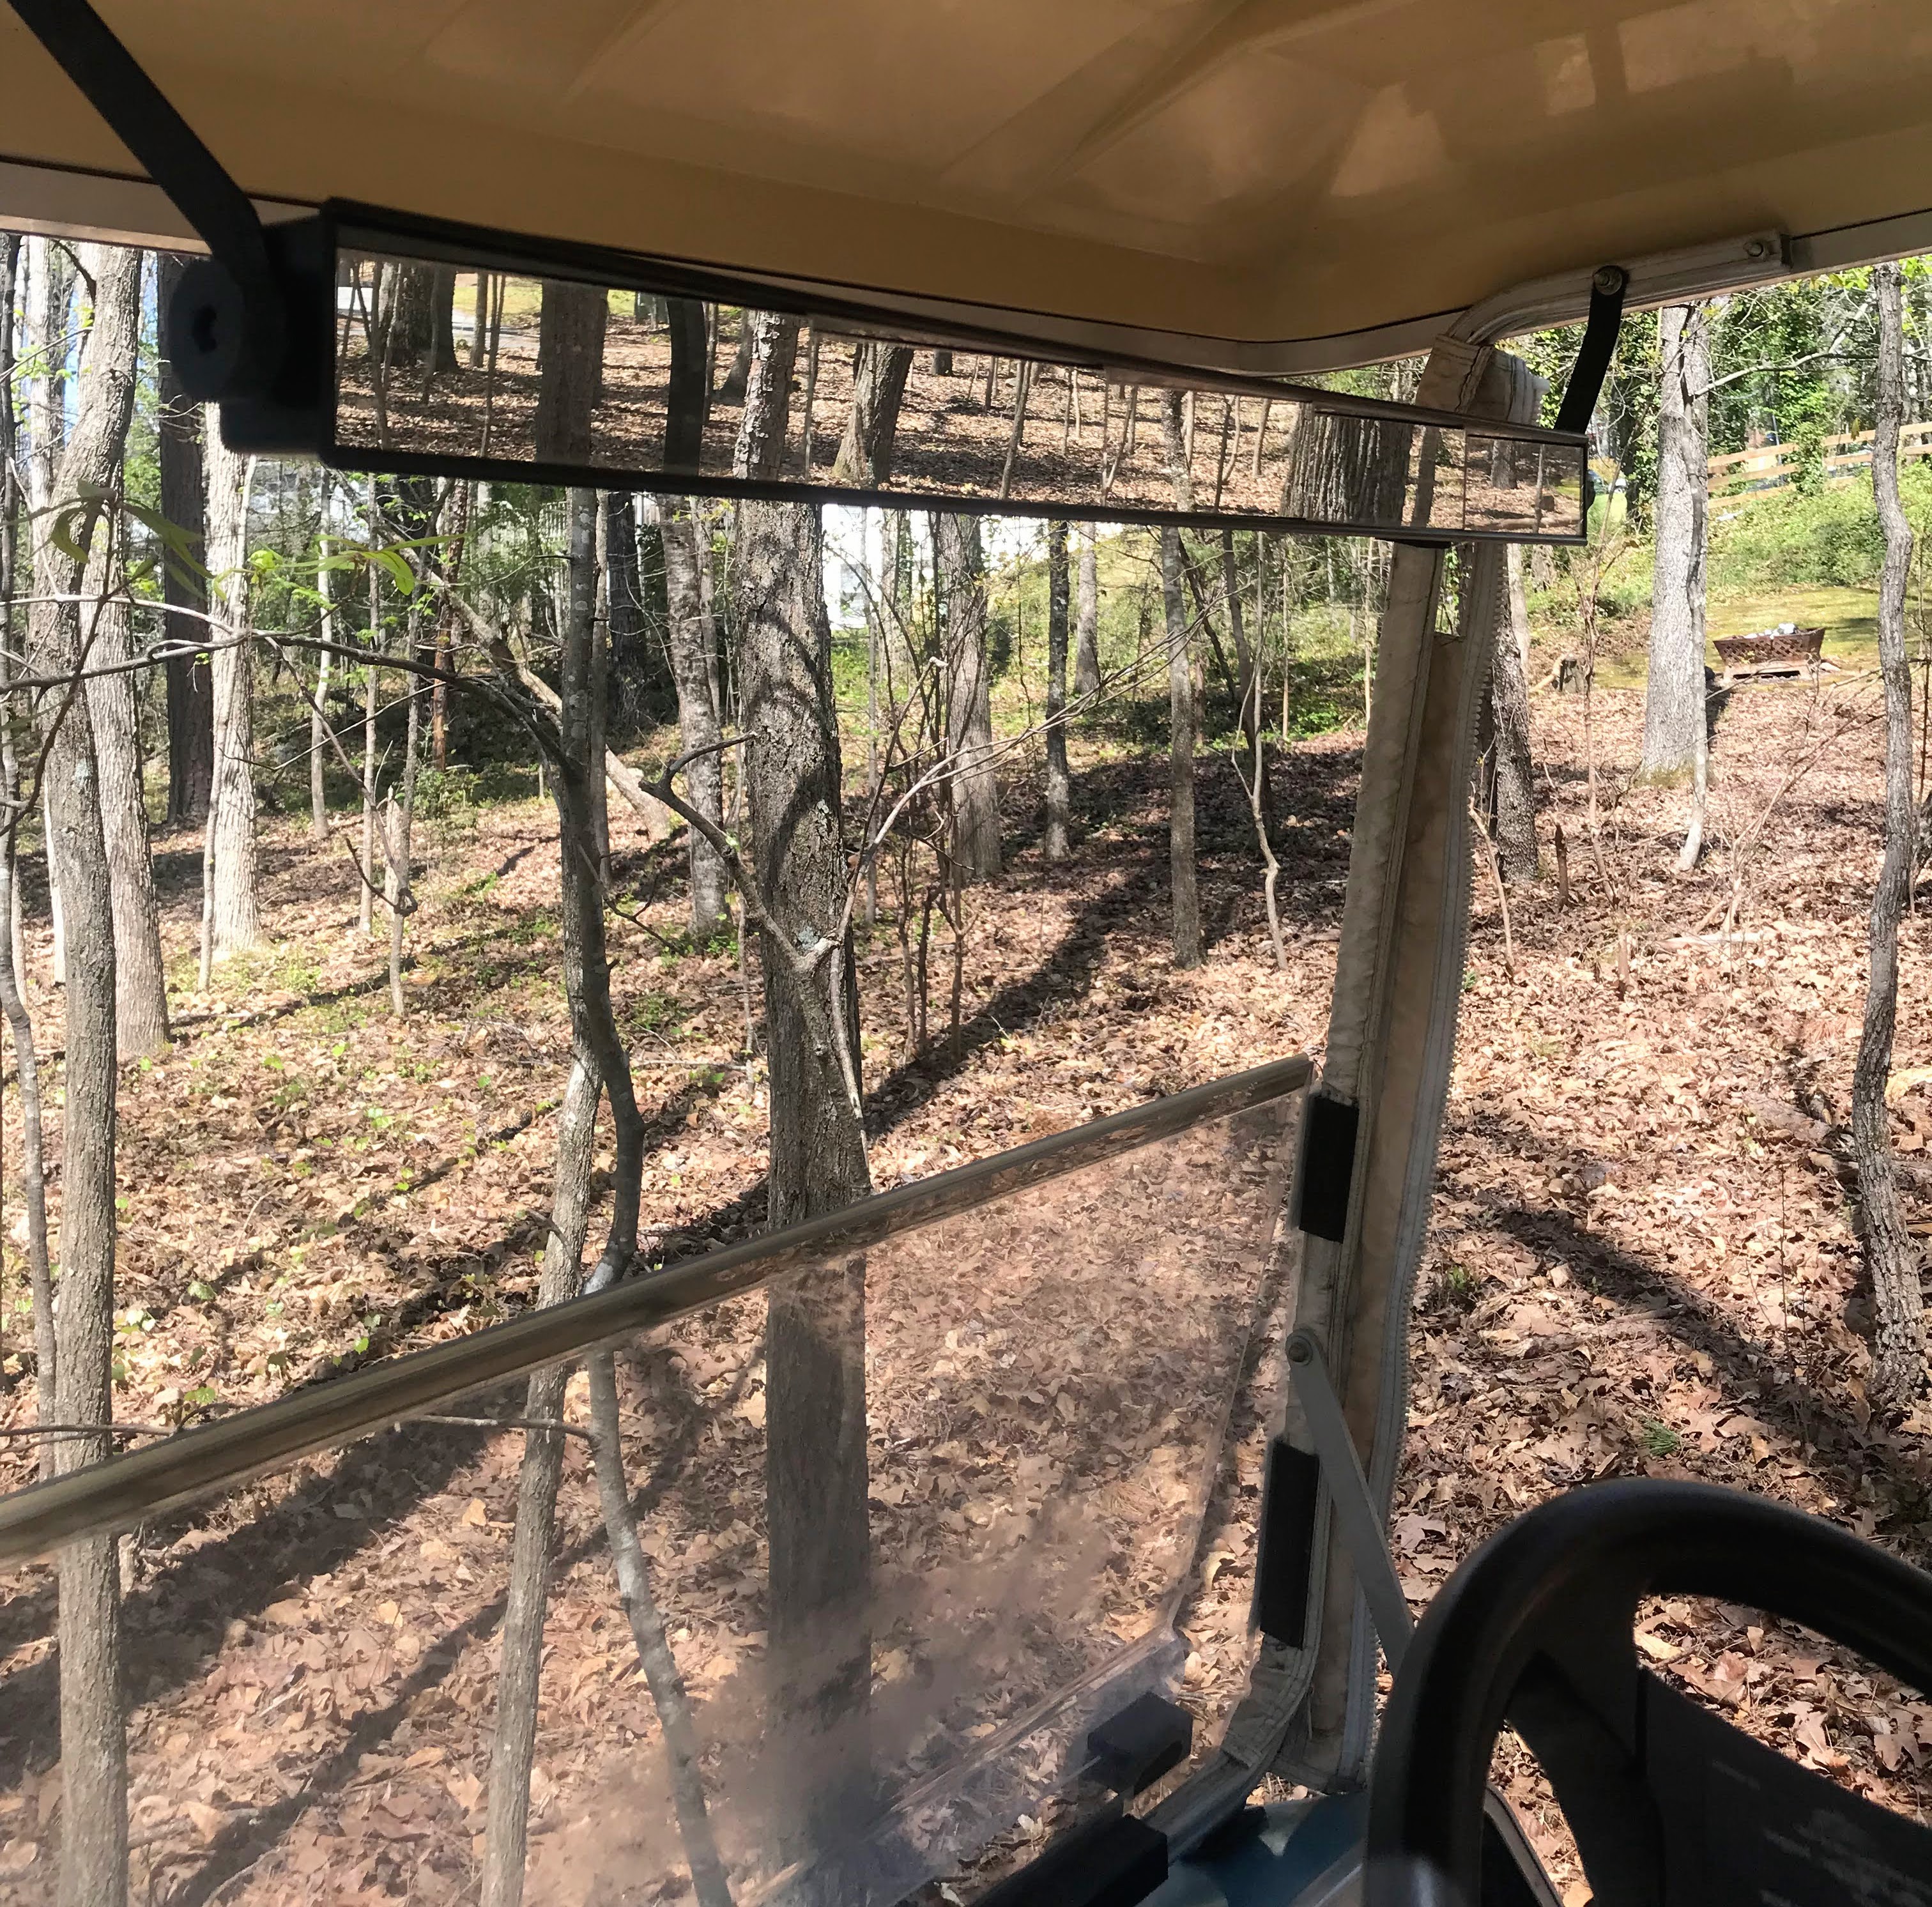 a golf cart rear view mirror